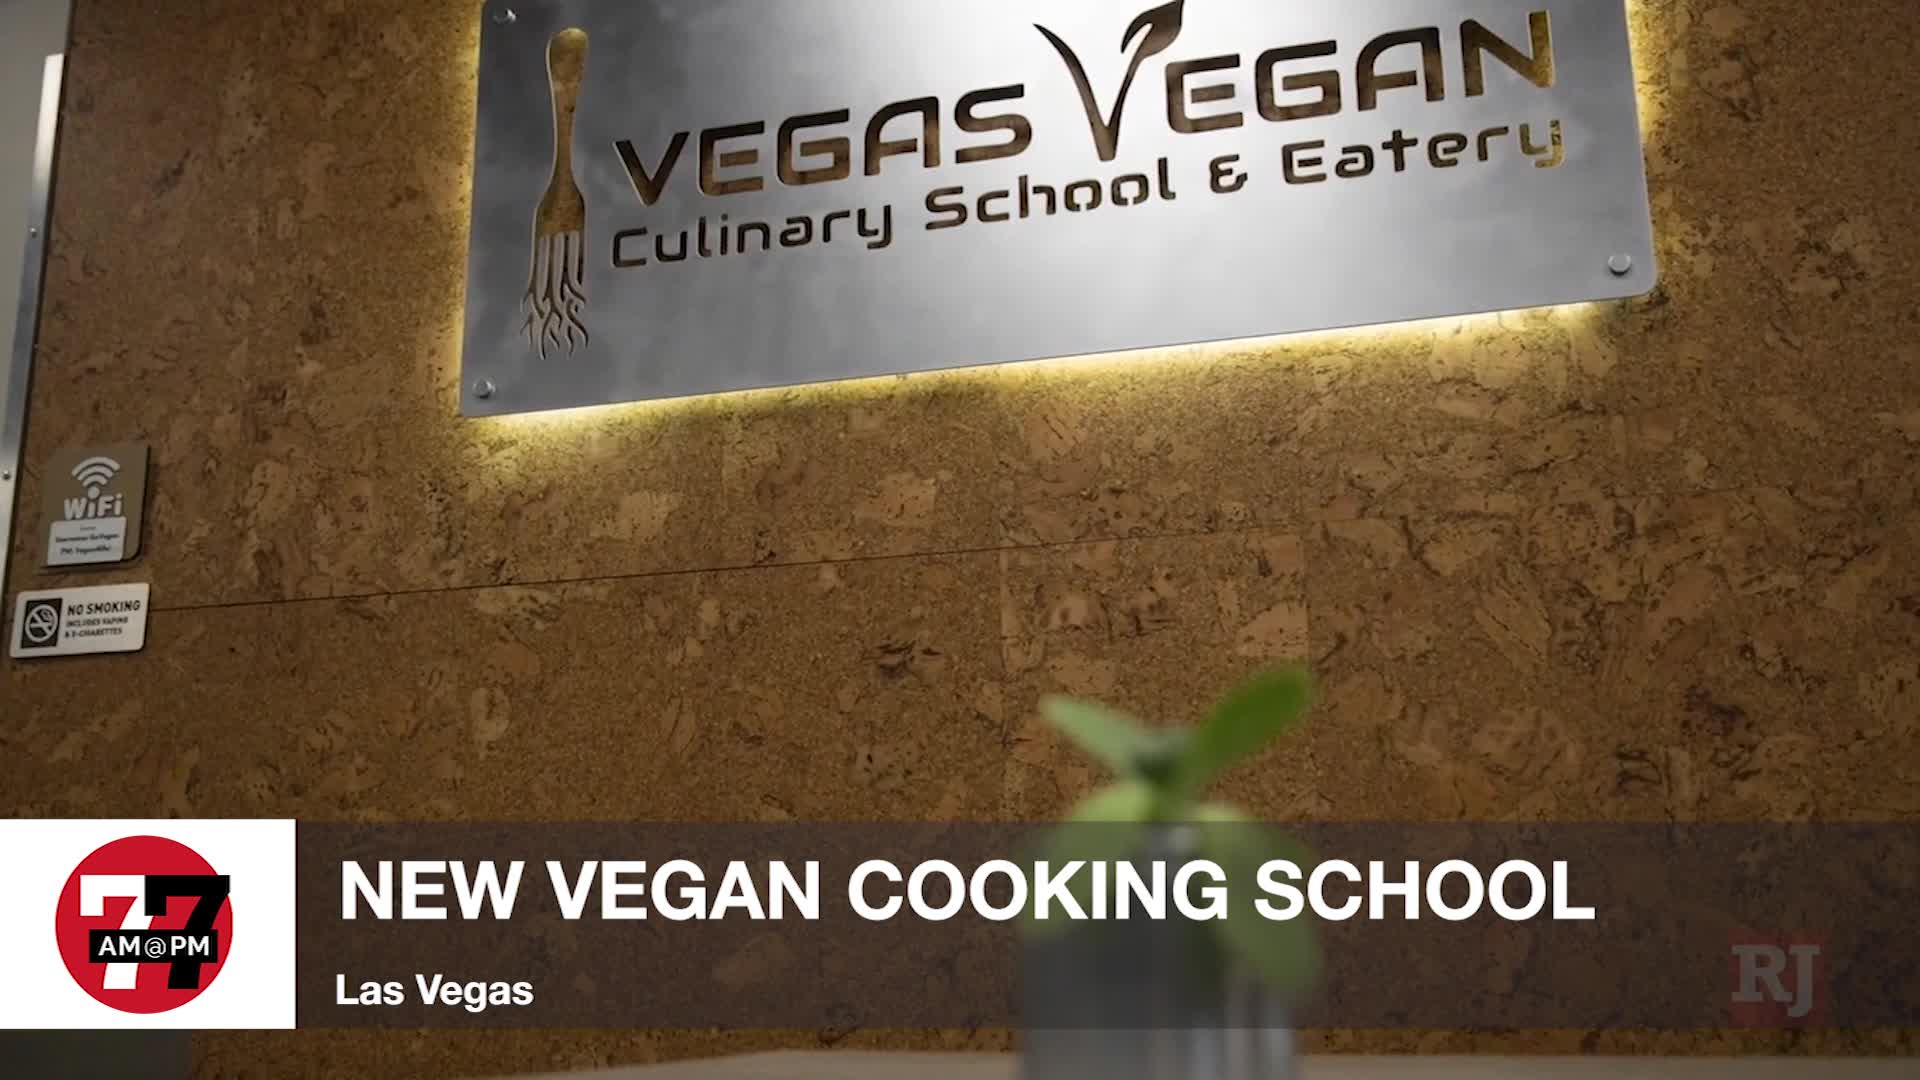 7@7PM New Vegan Cooking School